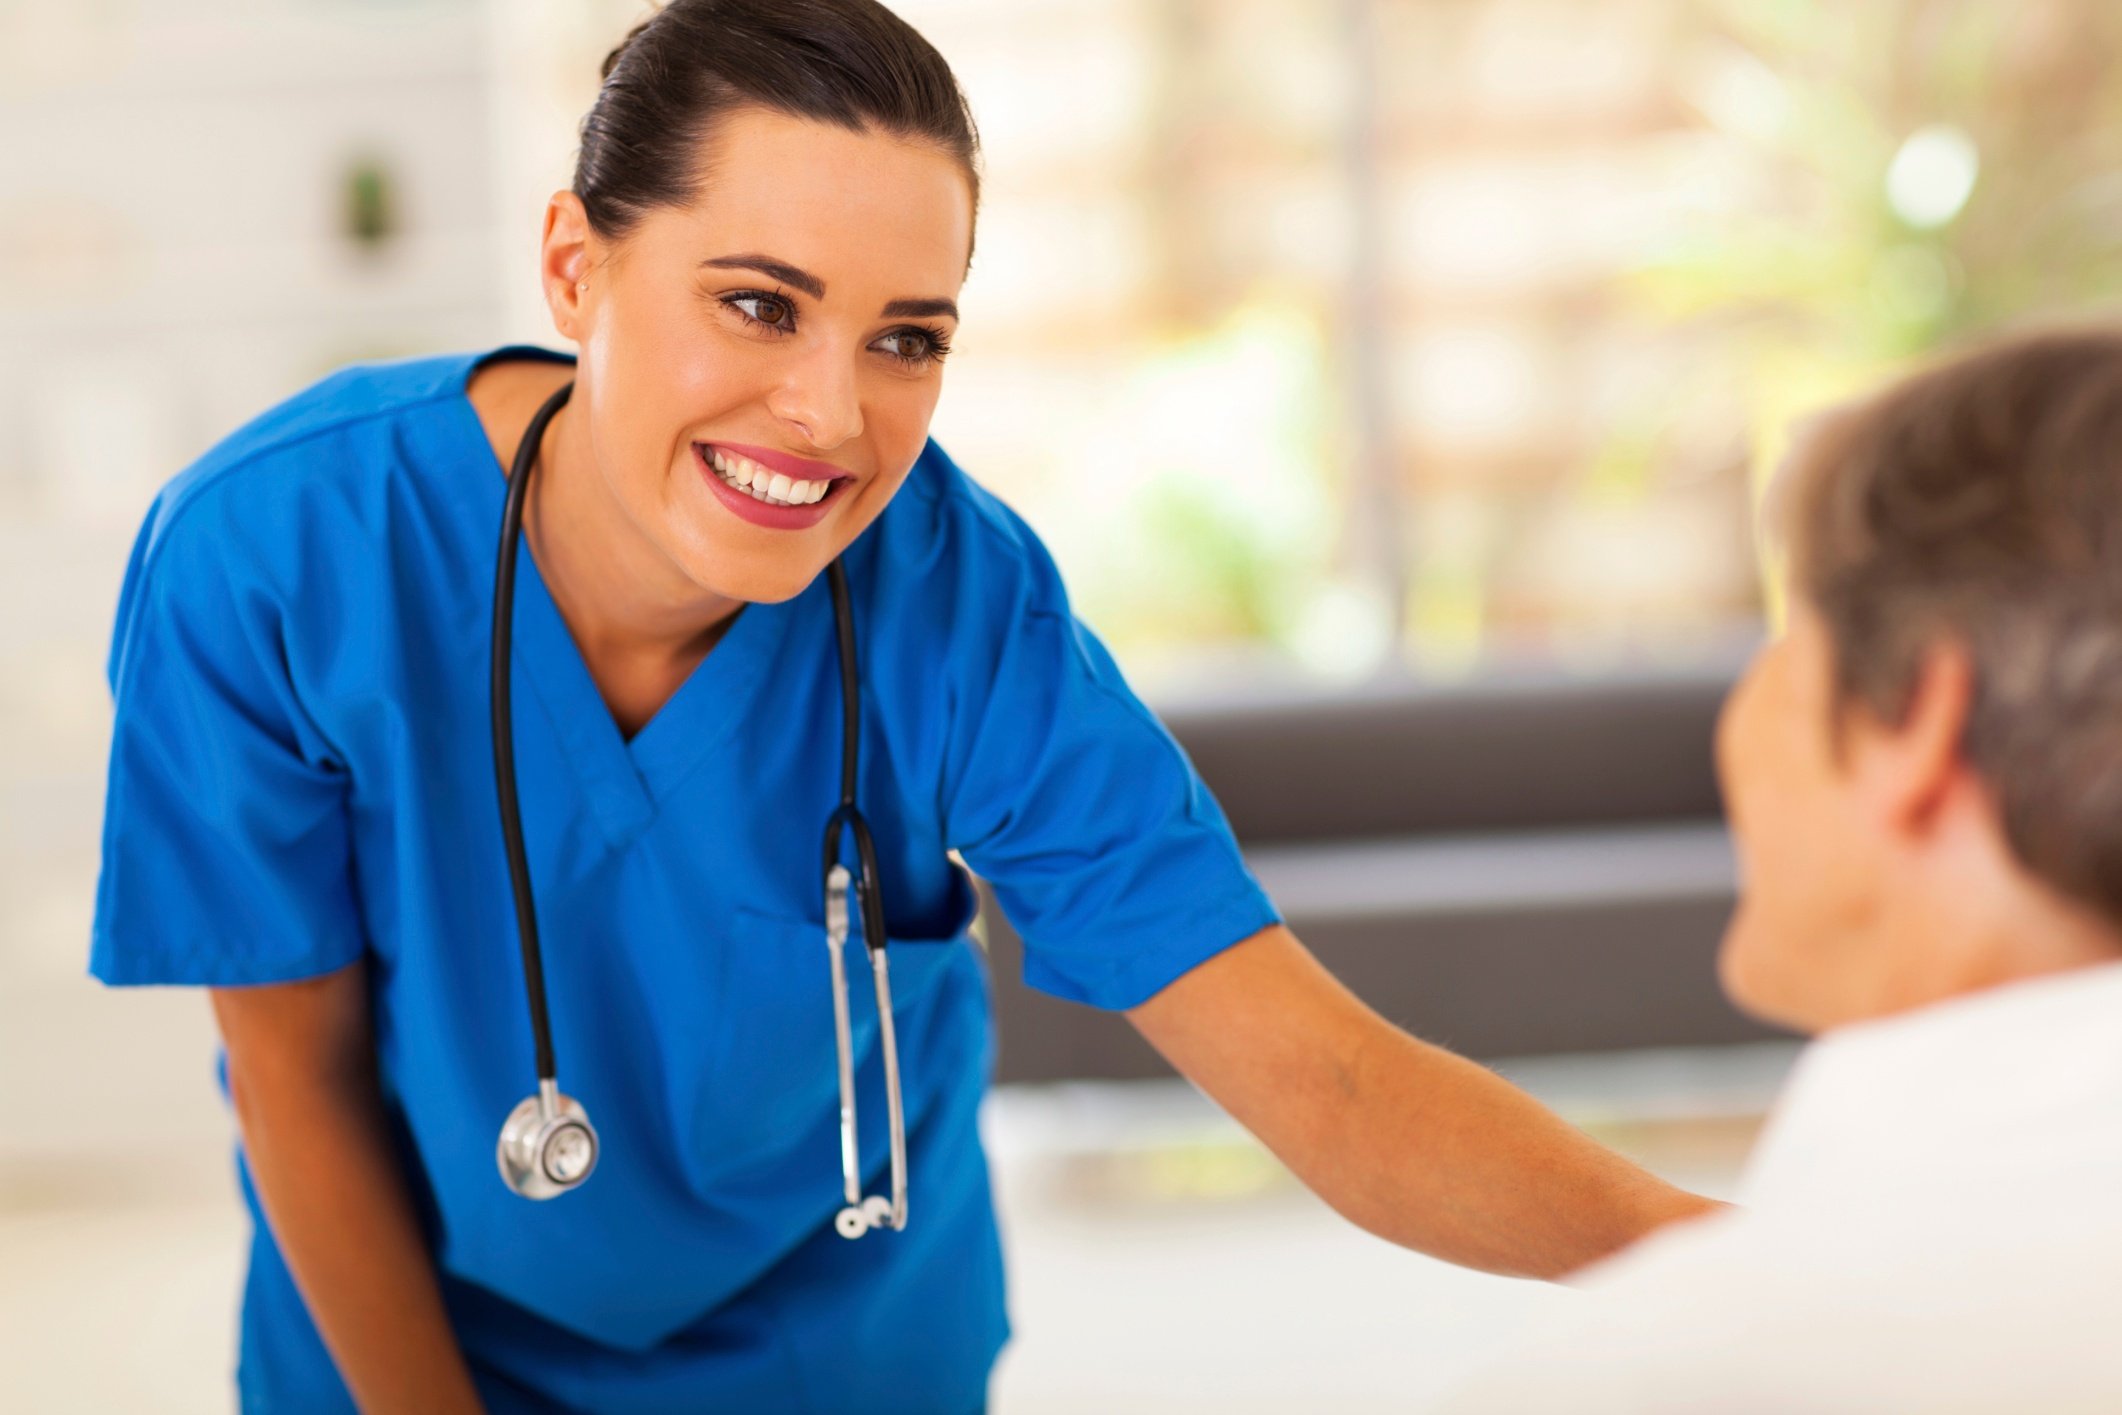 Qué es un Auxiliar de Enfermería: ¿limpiaculos? Desmontemos mitos